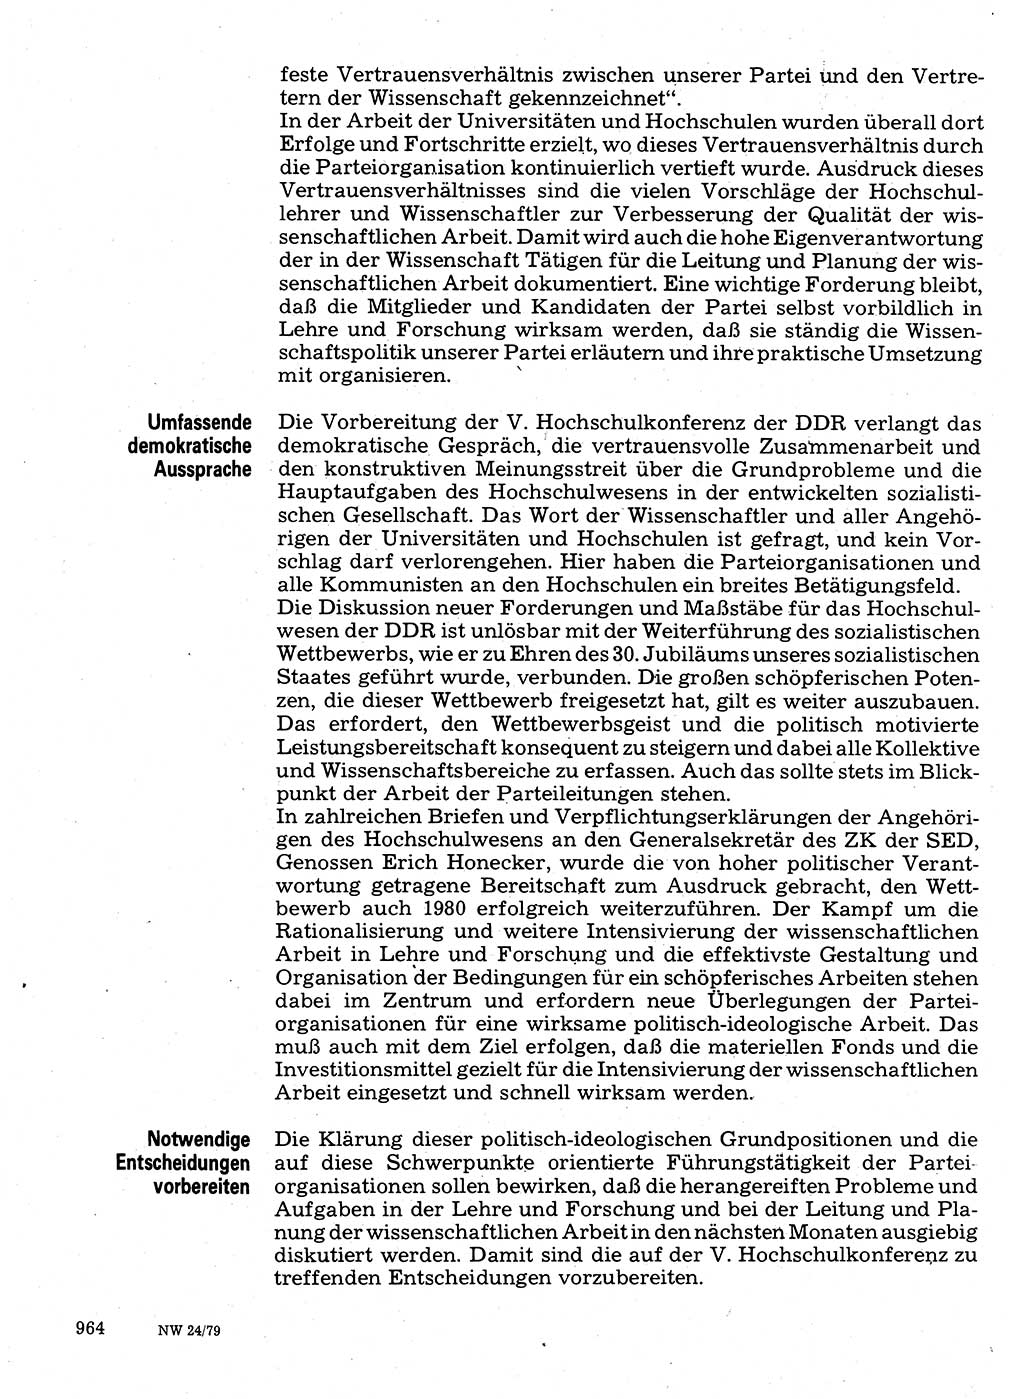 Neuer Weg (NW), Organ des Zentralkomitees (ZK) der SED (Sozialistische Einheitspartei Deutschlands) für Fragen des Parteilebens, 34. Jahrgang [Deutsche Demokratische Republik (DDR)] 1979, Seite 964 (NW ZK SED DDR 1979, S. 964)